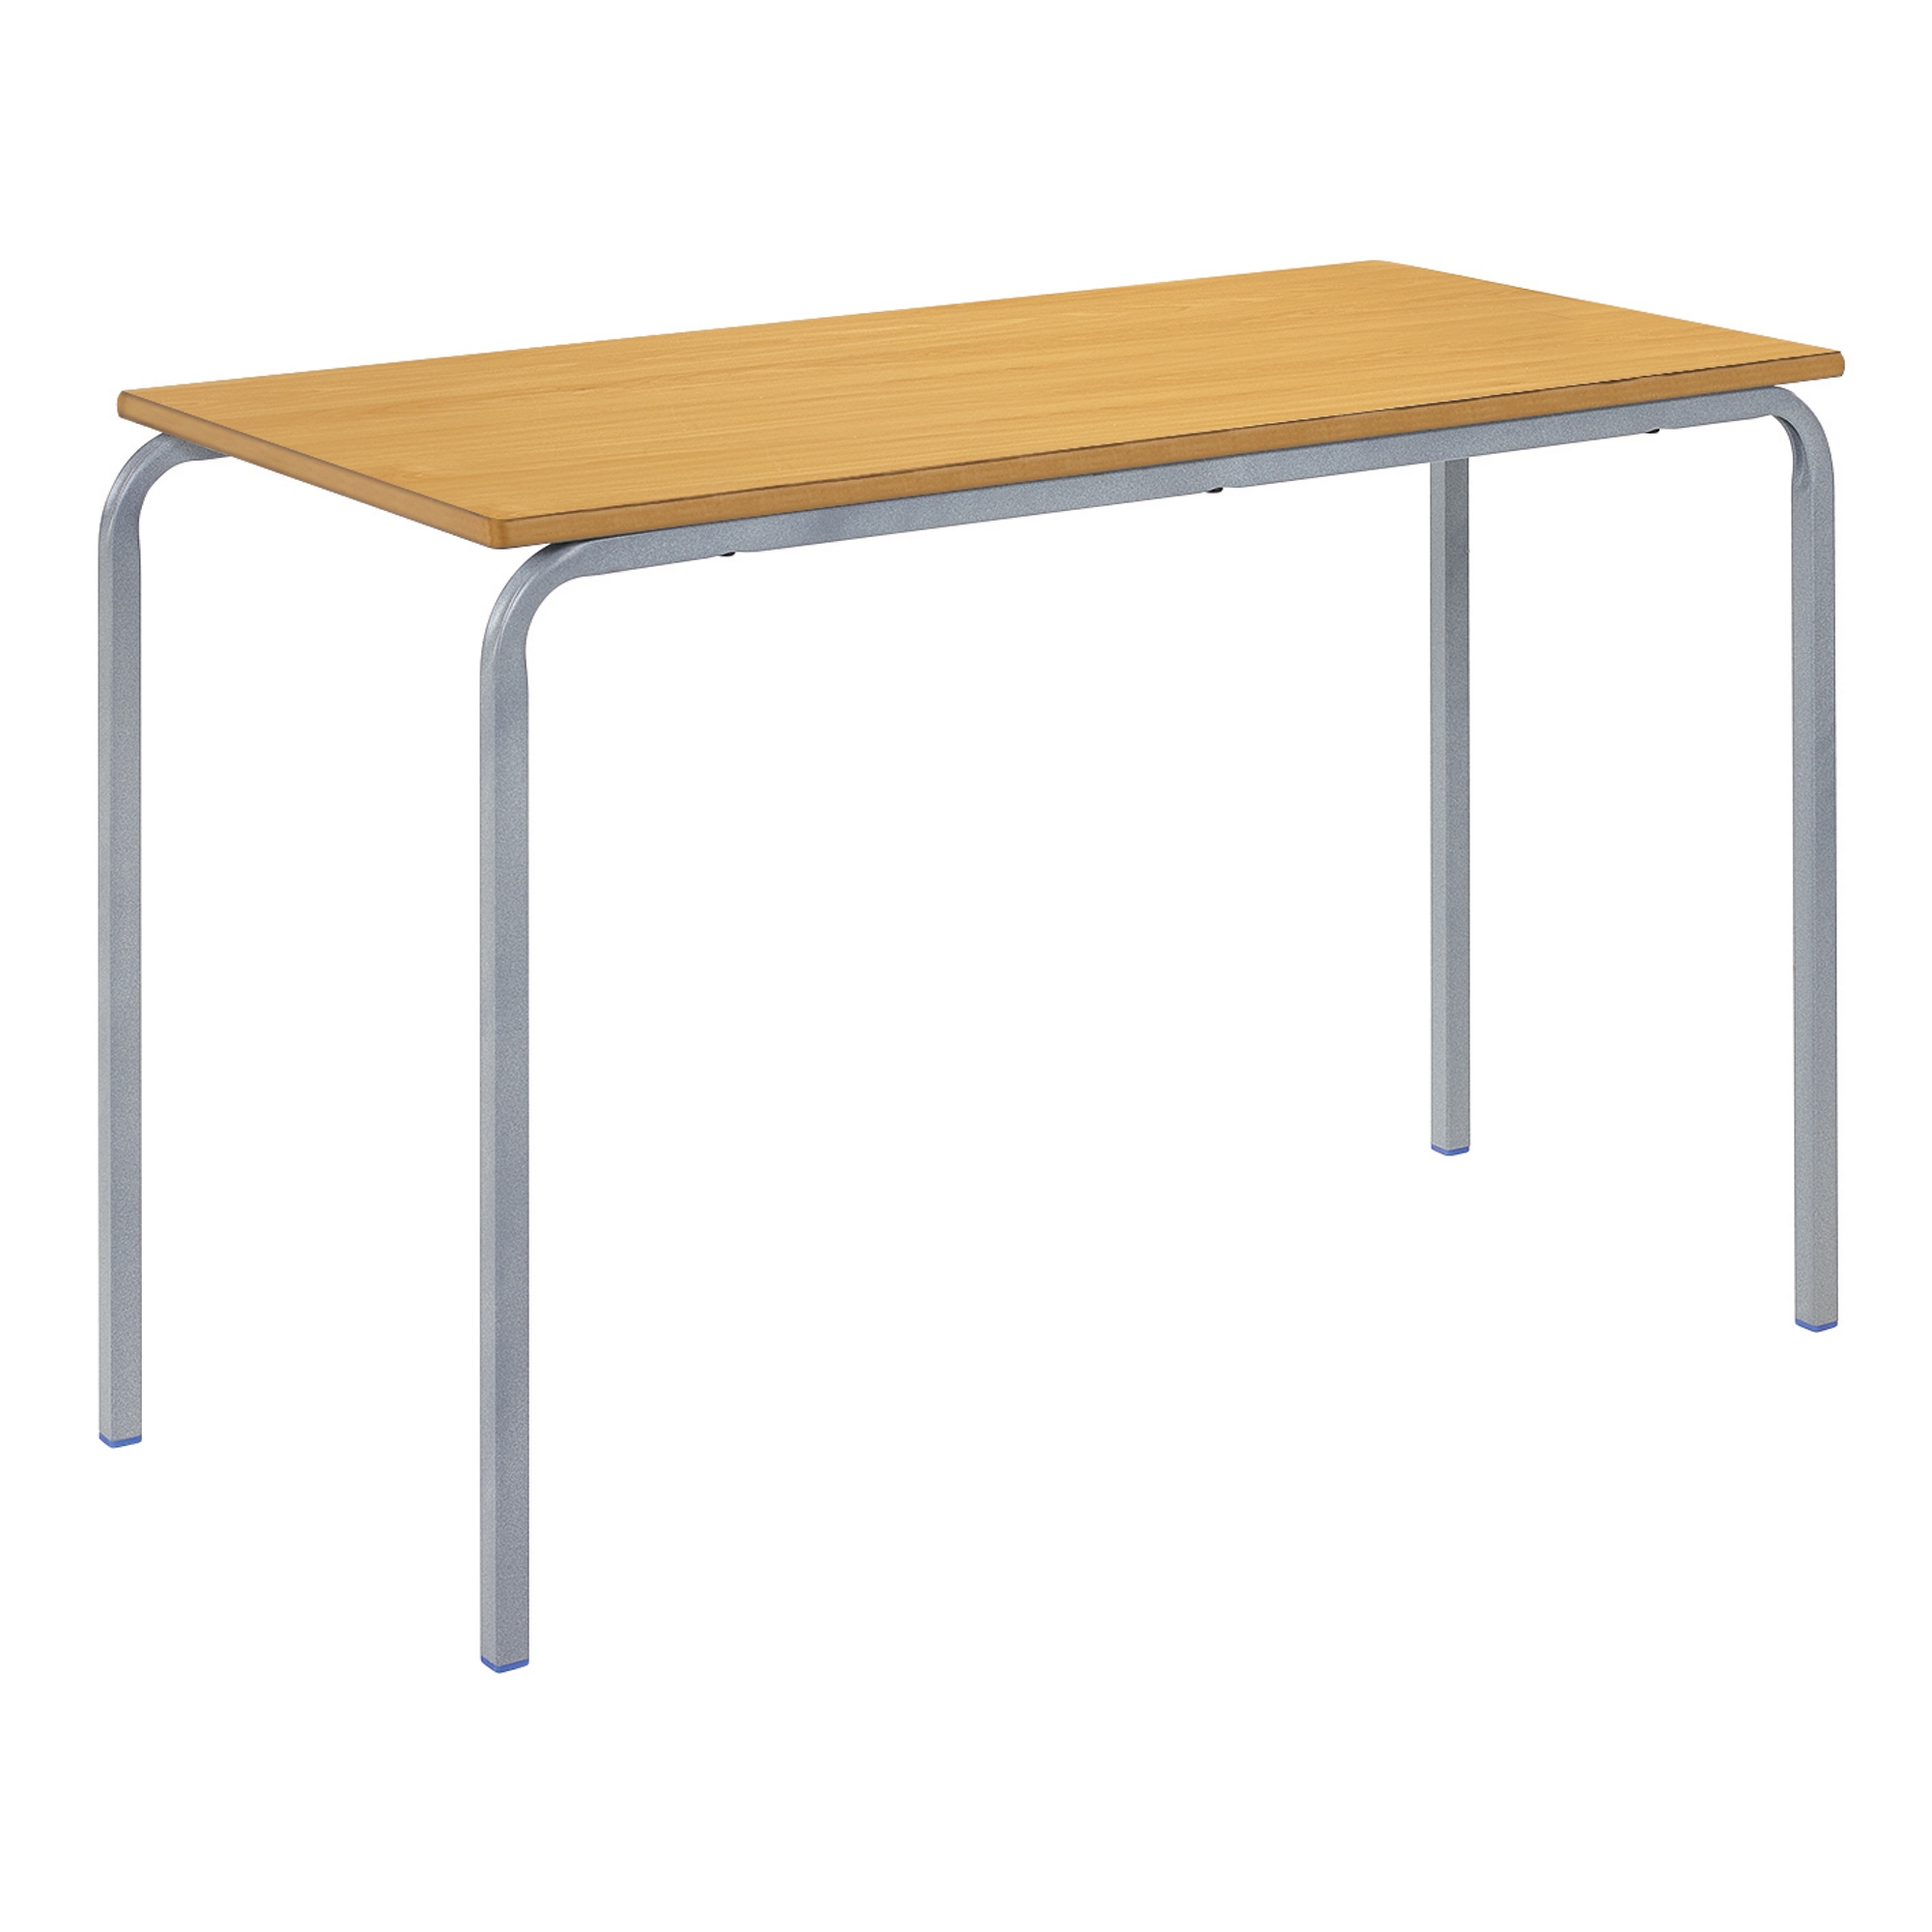 Classmates Rectangular Crushed Bent Classroom Table - 1100 x 550 x 640mm - Beech